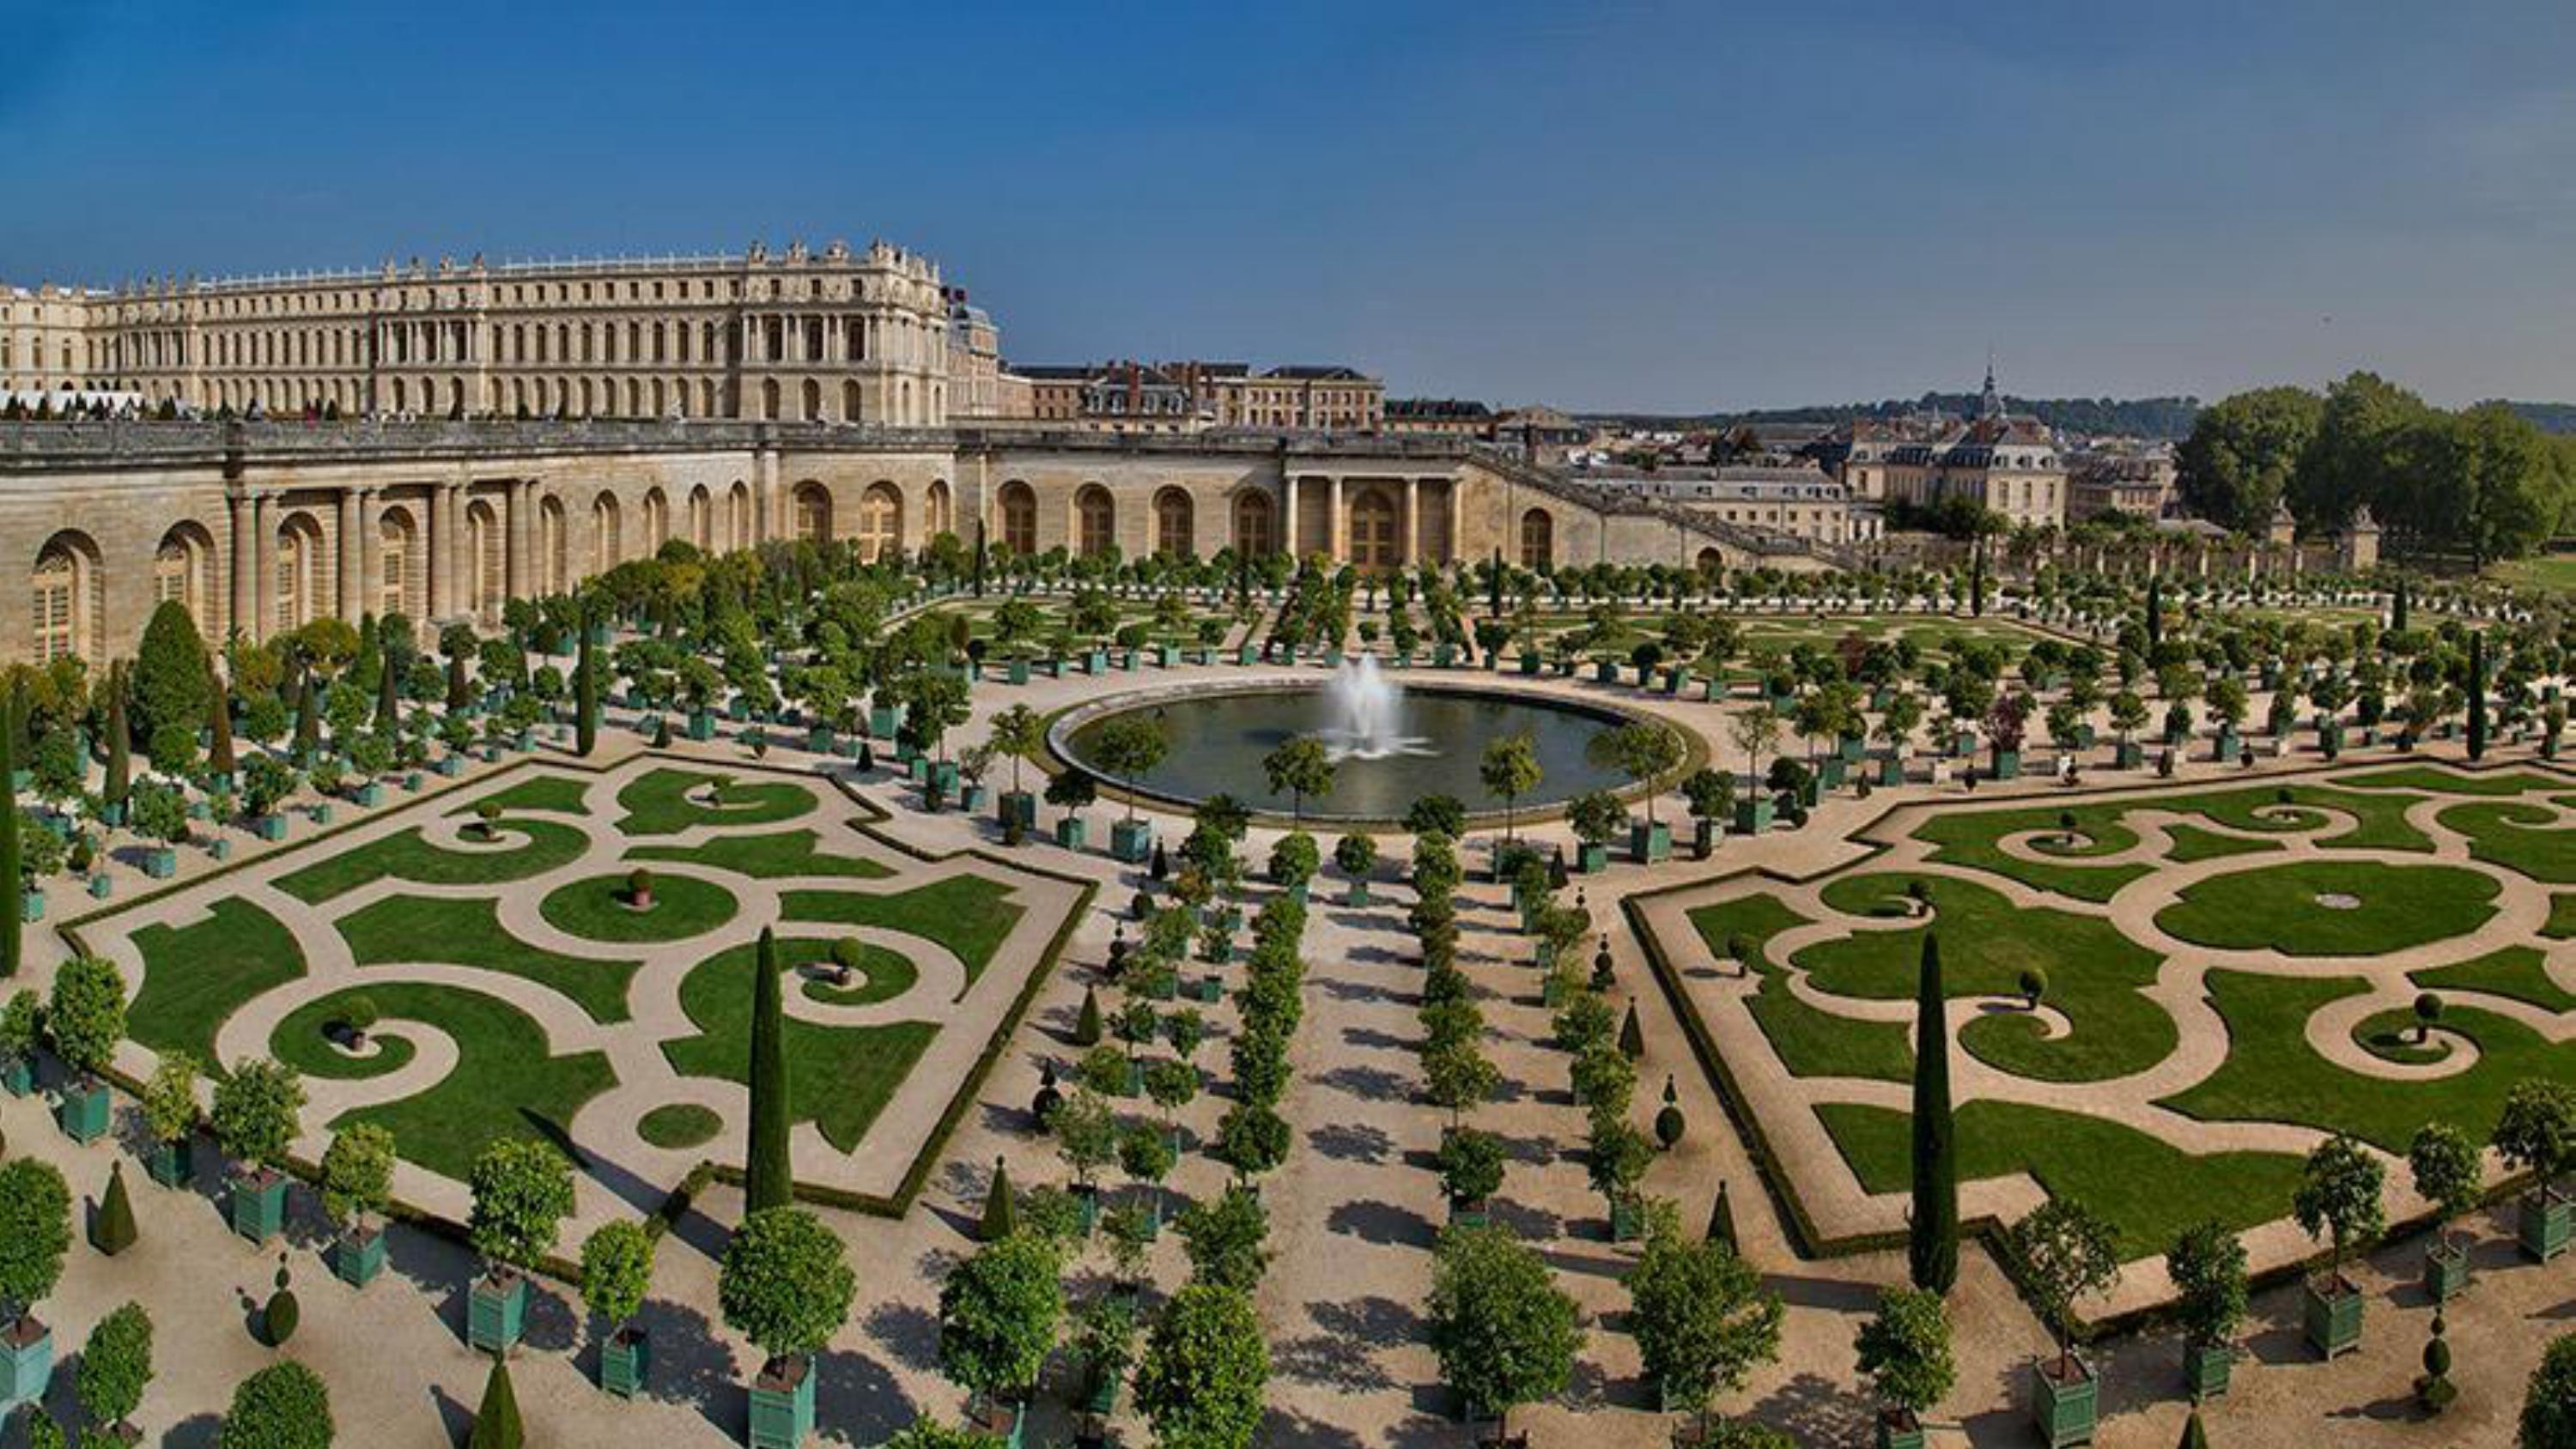 Chateau versailles. Версальский дворец и парк. Андре Ленотр Версальский парк. Дворец и парк в Версале Франция. Оружейная площадь Версальского дворца.